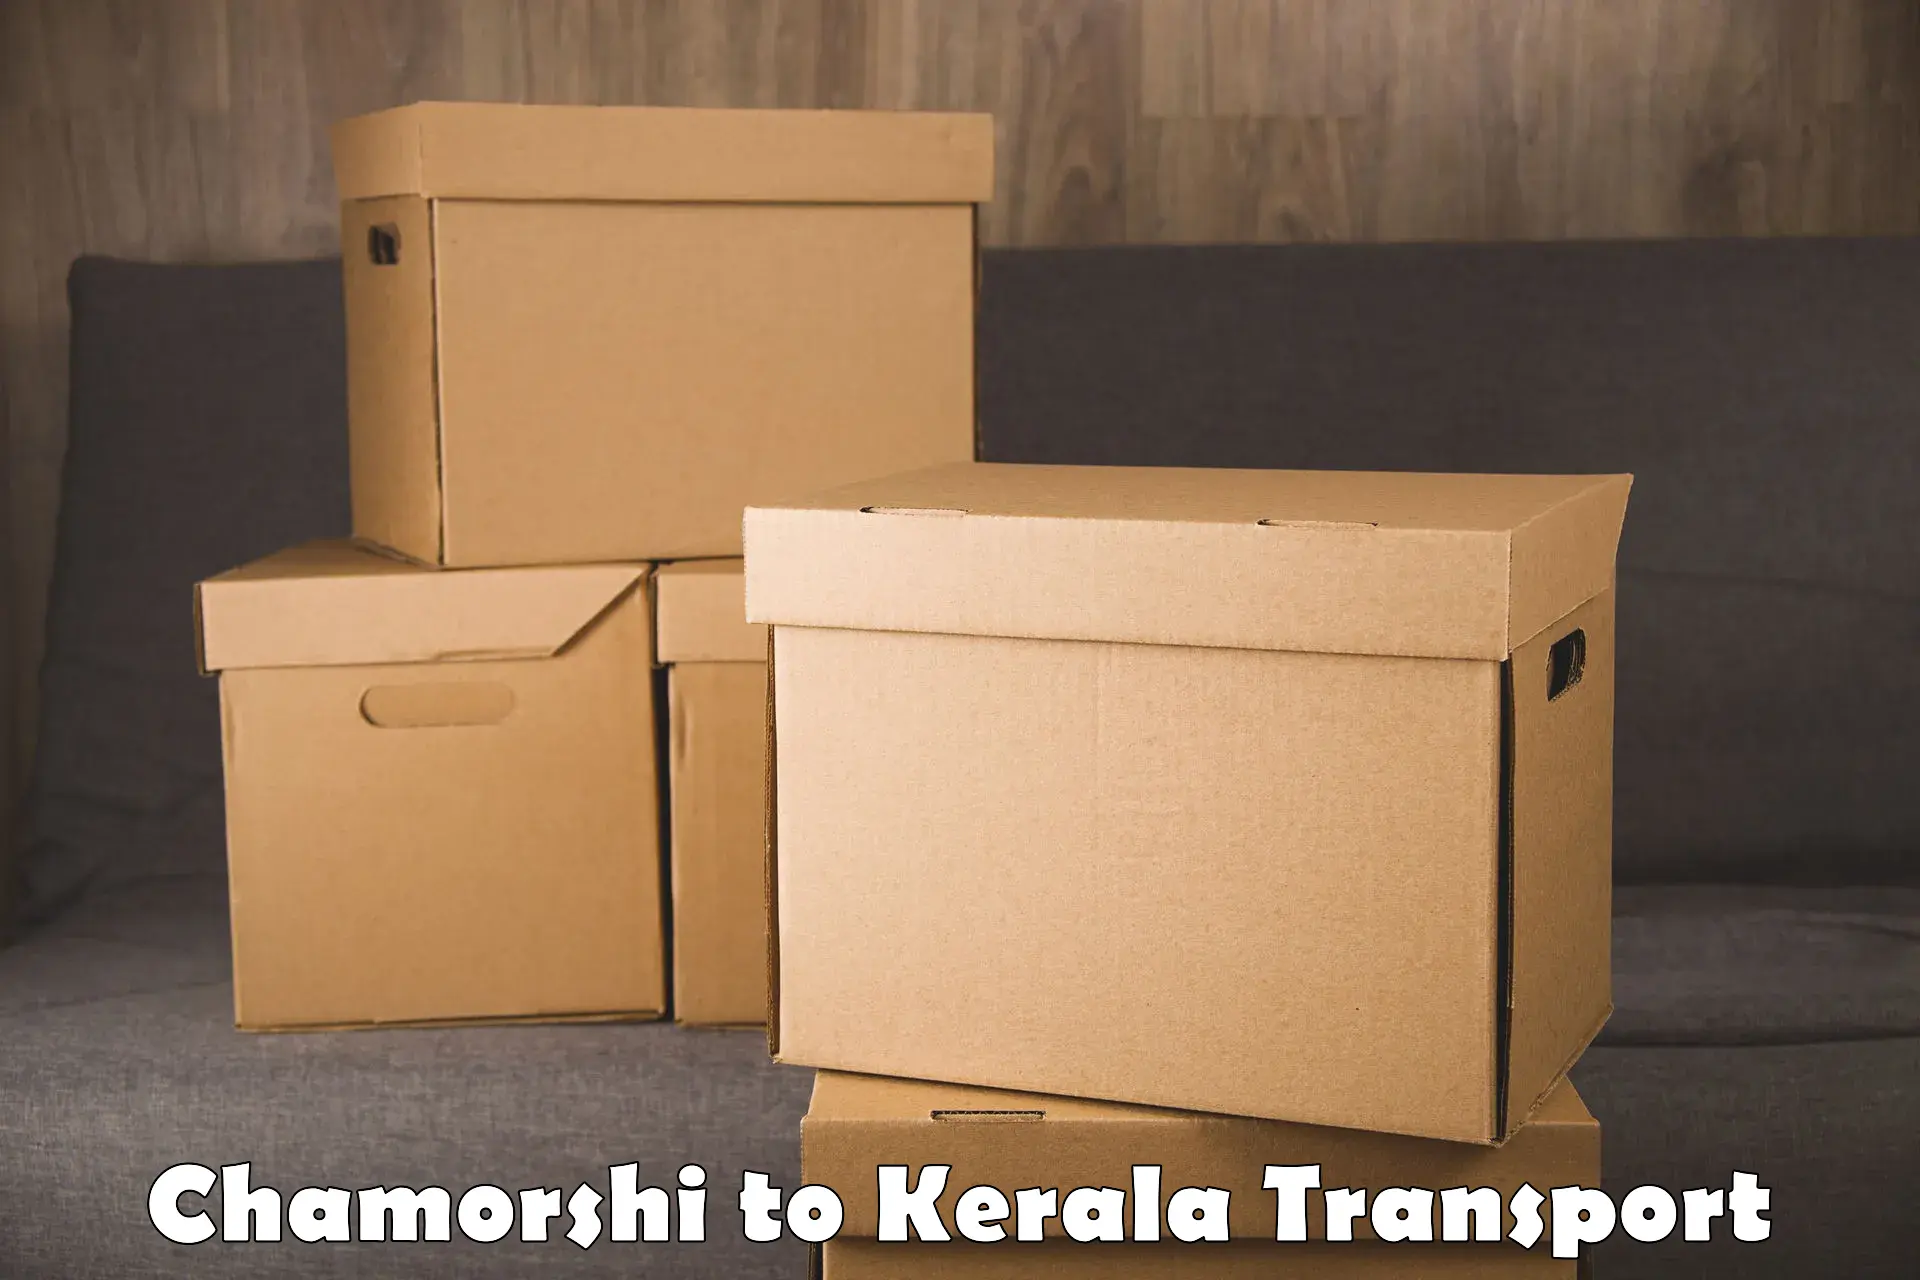 Transport shared services Chamorshi to Kakkayam